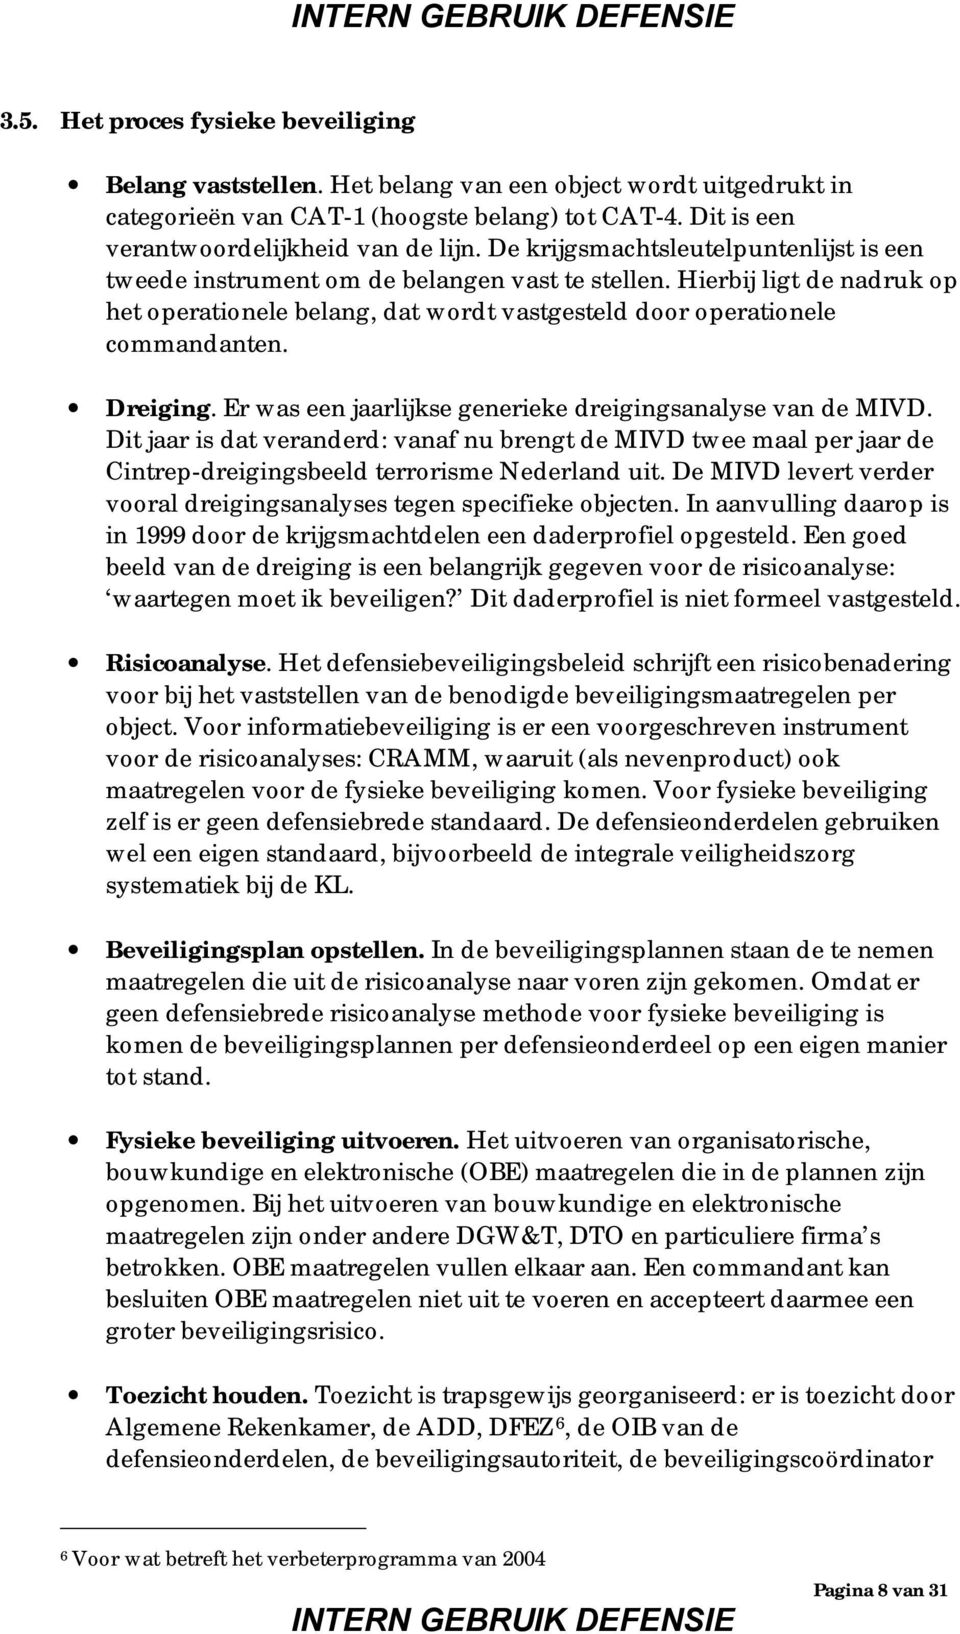 Dreiging. Er was een jaarlijkse generieke dreigingsanalyse van de MIVD. Dit jaar is dat veranderd: vanaf nu brengt de MIVD twee maal per jaar de Cintrep-dreigingsbeeld terrorisme Nederland uit.